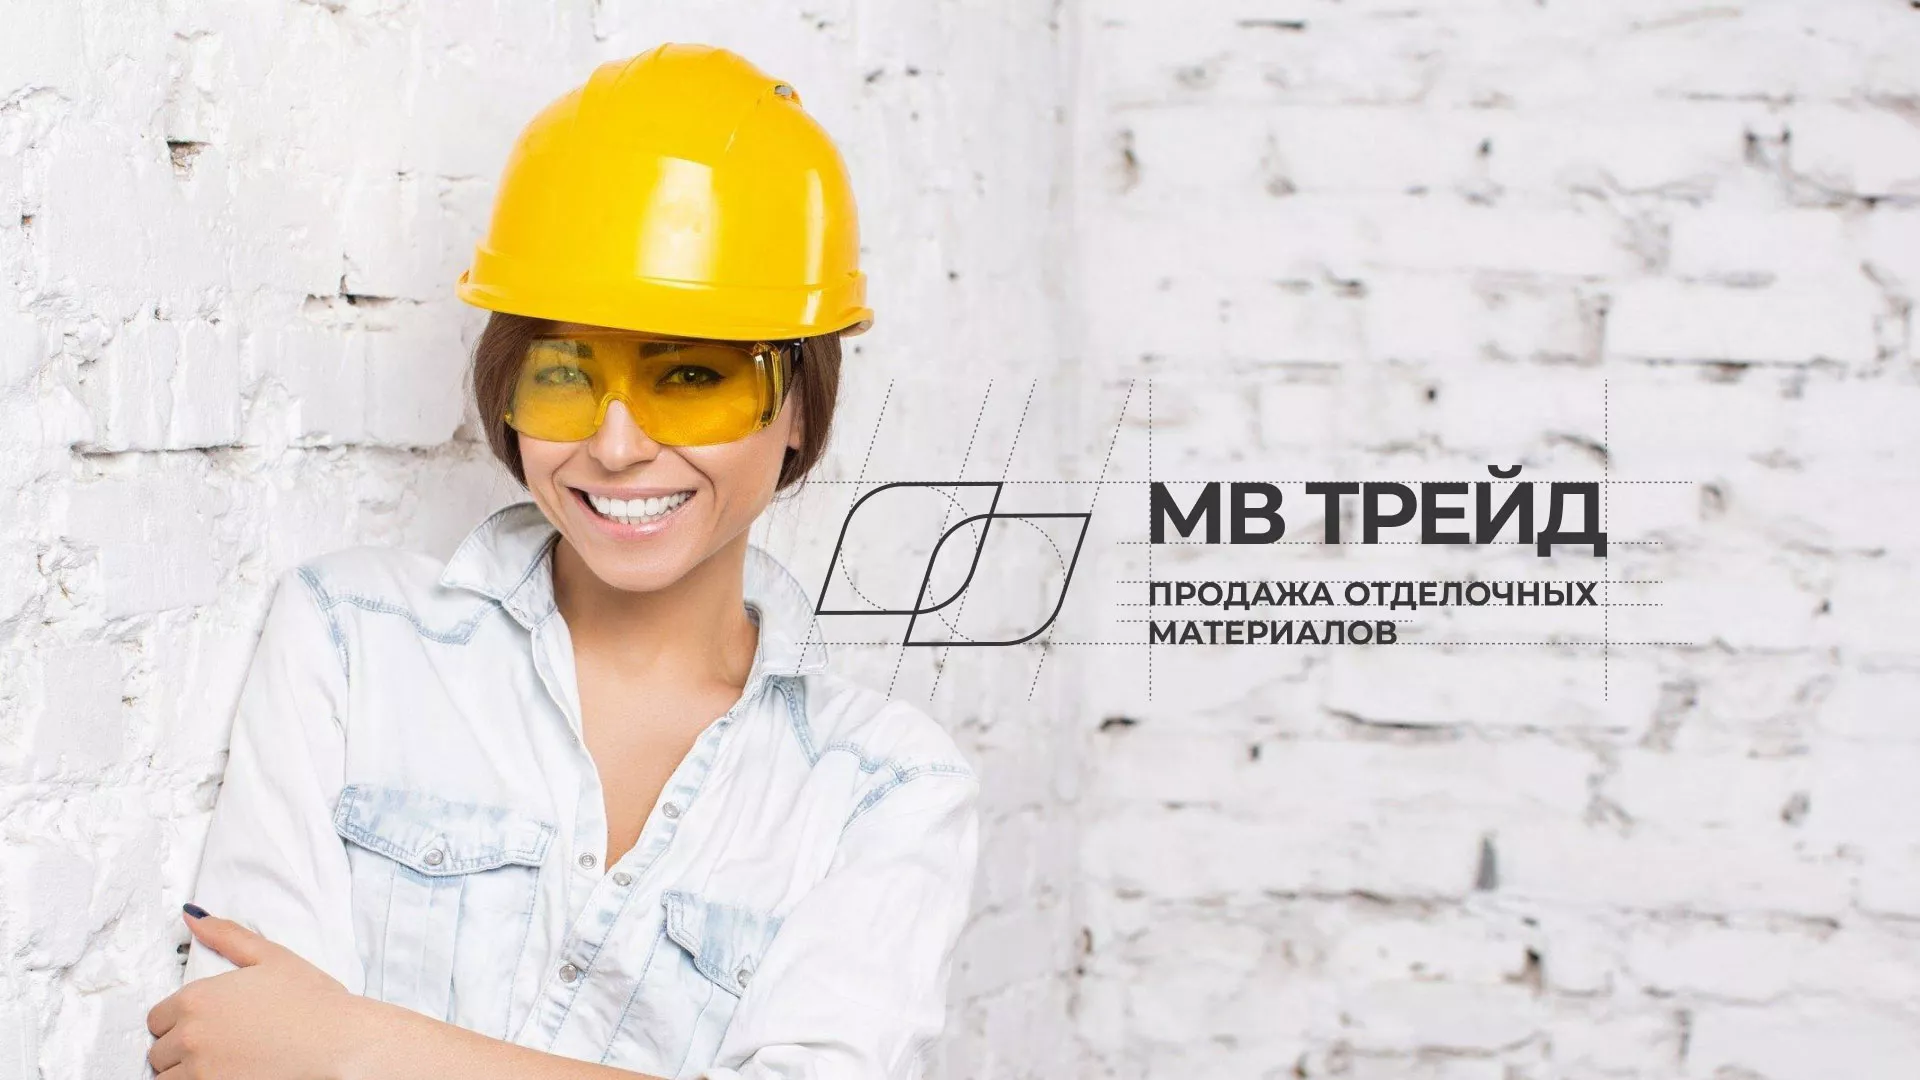 Разработка логотипа и сайта компании «МВ Трейд» в Петровске-Забайкальском